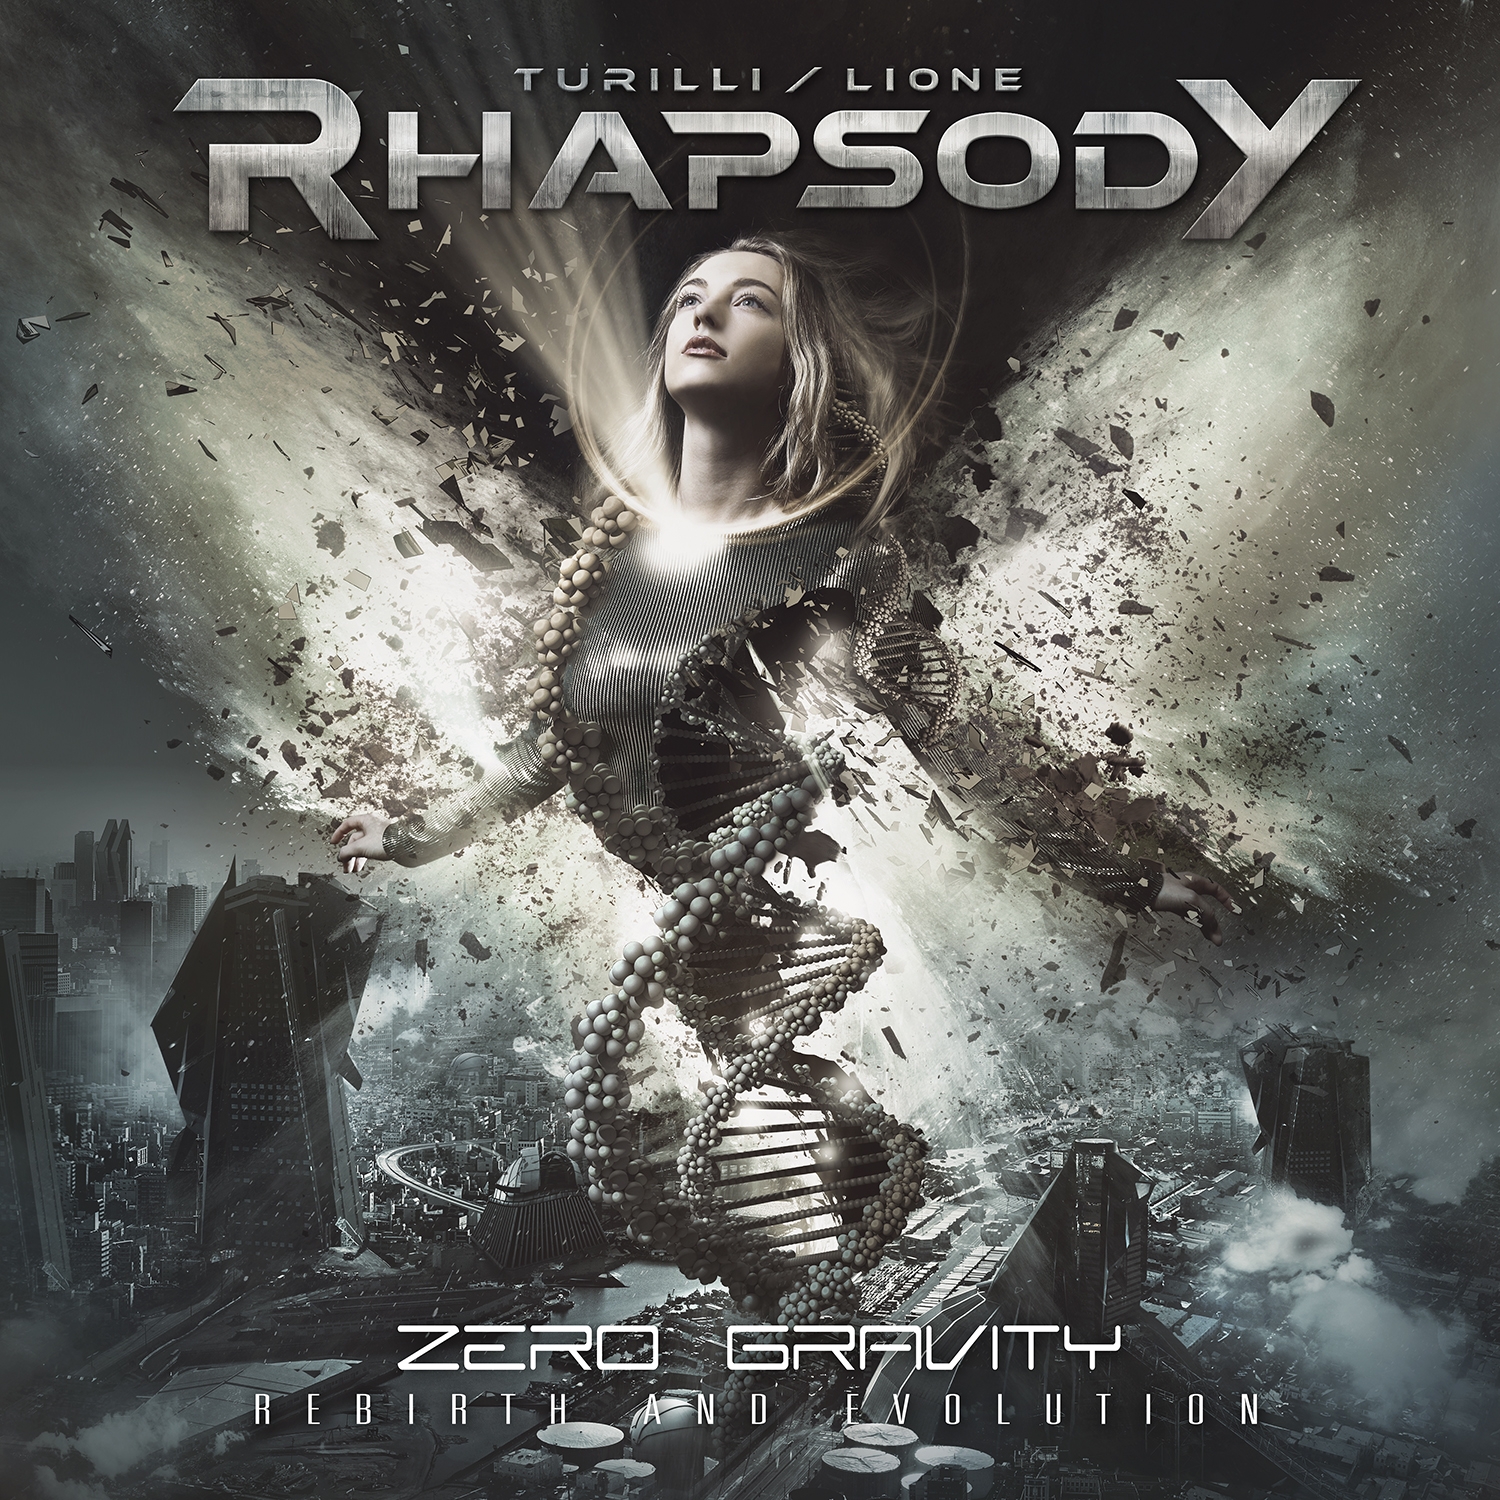 Metal-Review: Turilli / Lione RHAPSODY  – Zero Gravity (Rebirth And Evolution)